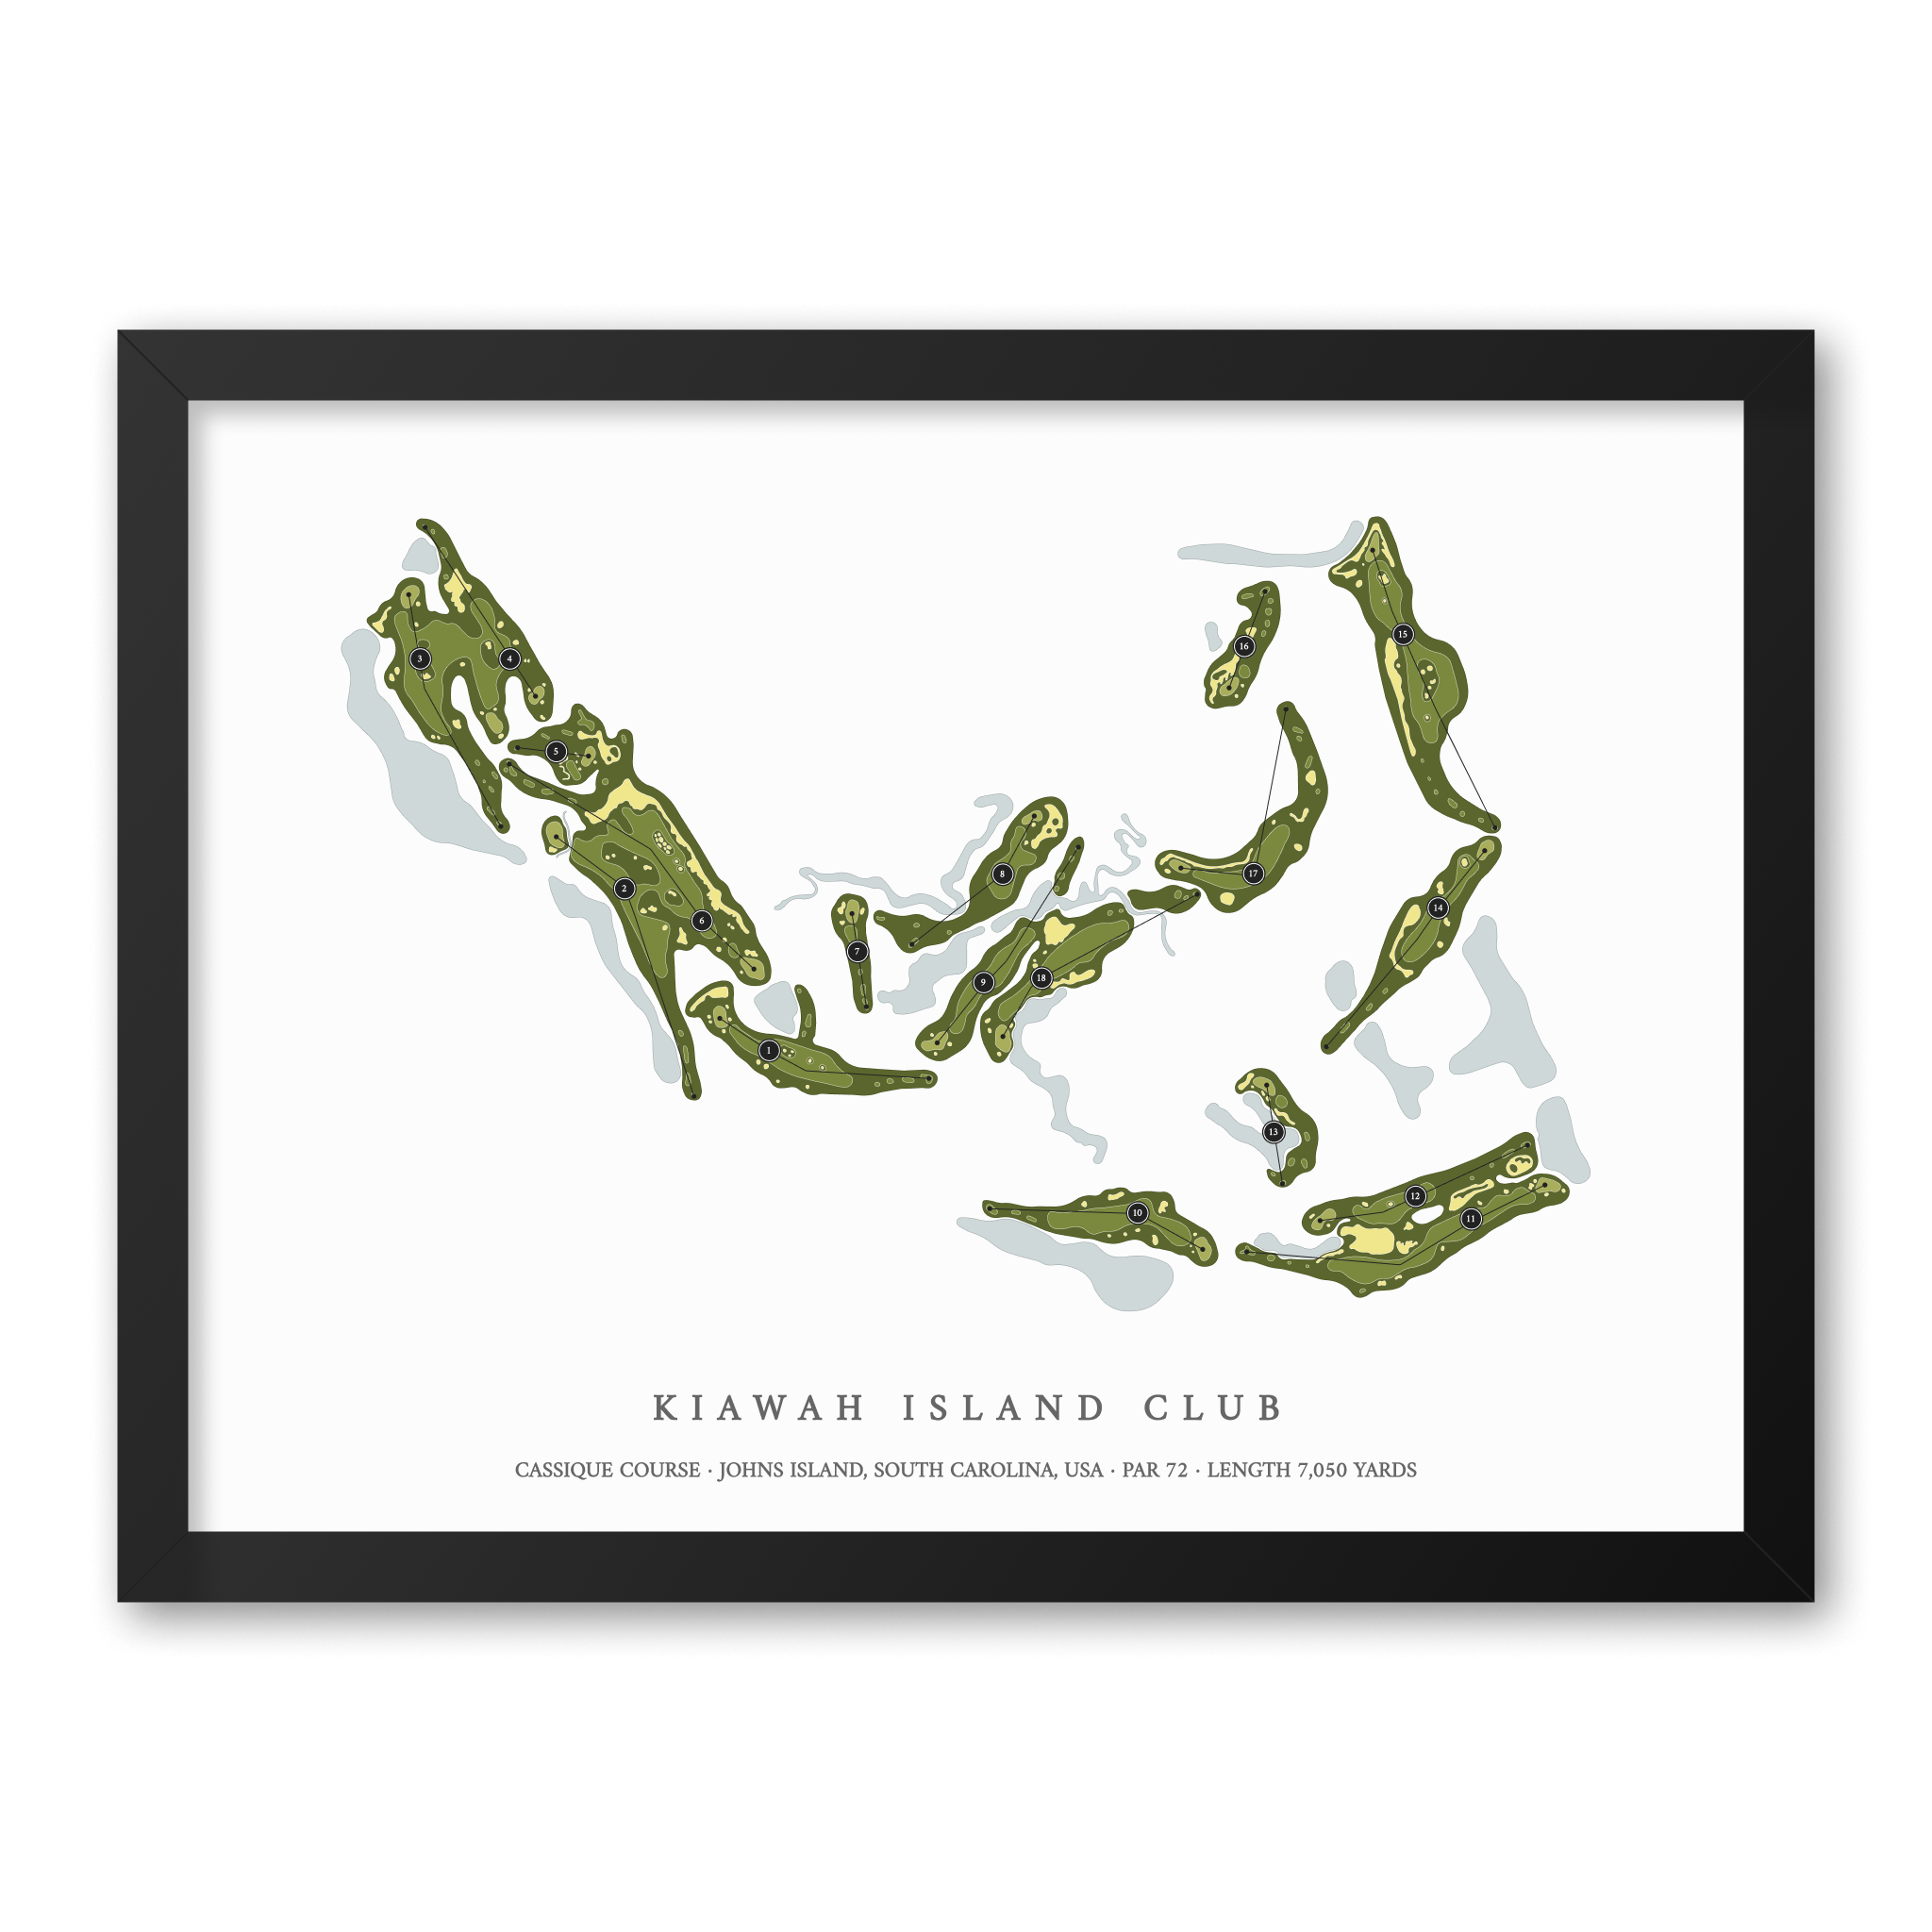 Kiawah Island Club - Cassique Course | Golf Course Map | Black Frame